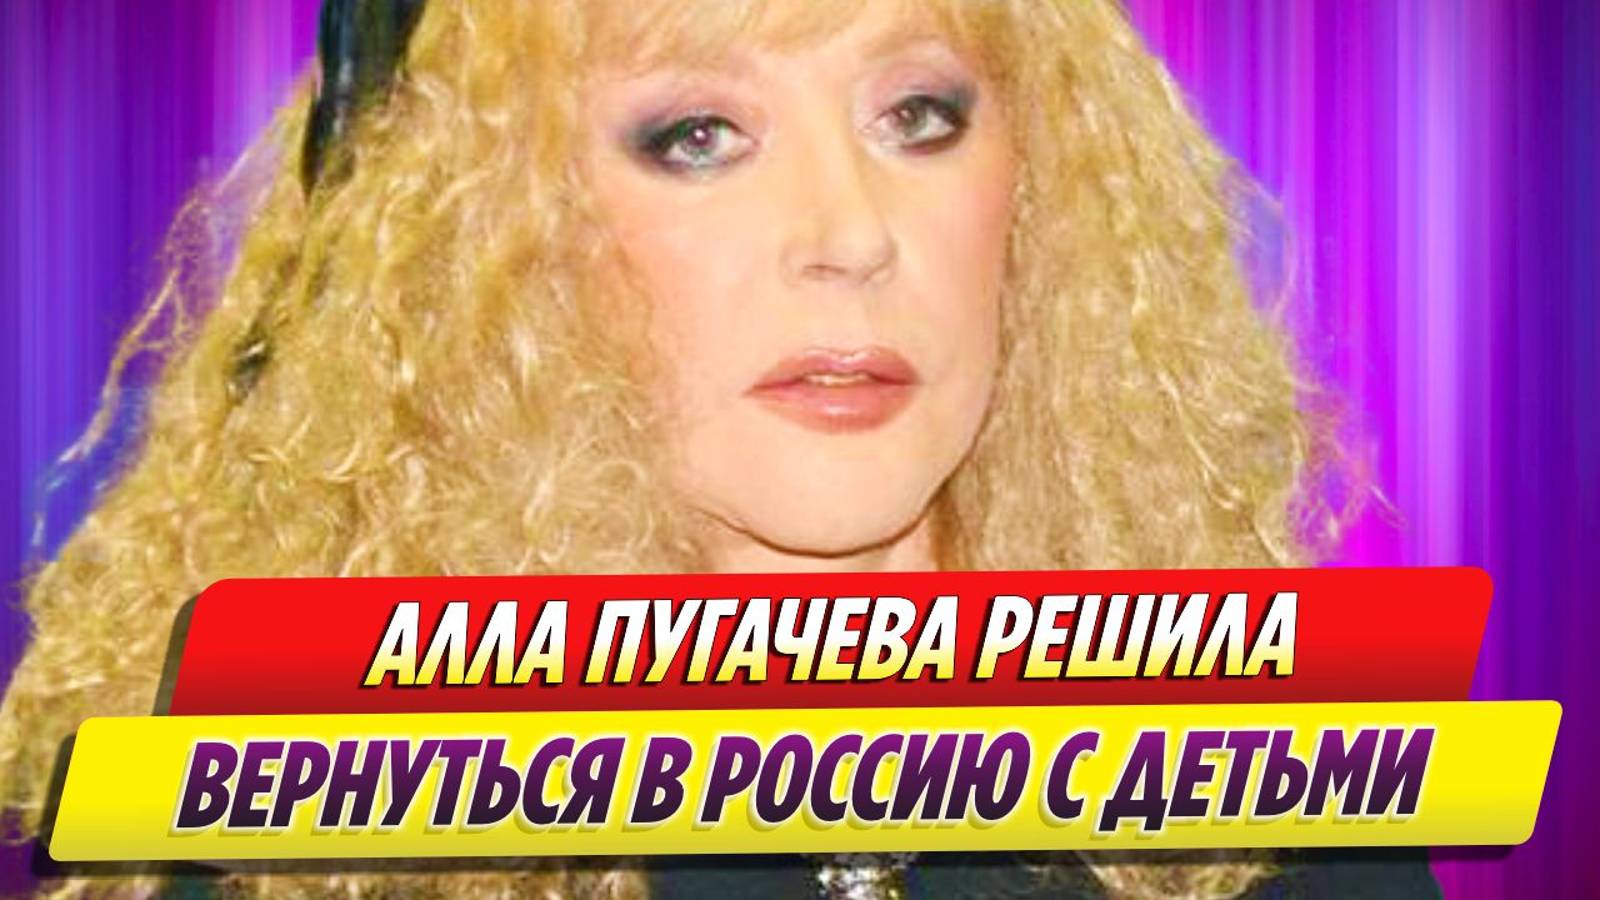 Алла Пугачева решила вернуться в Россию с детьми